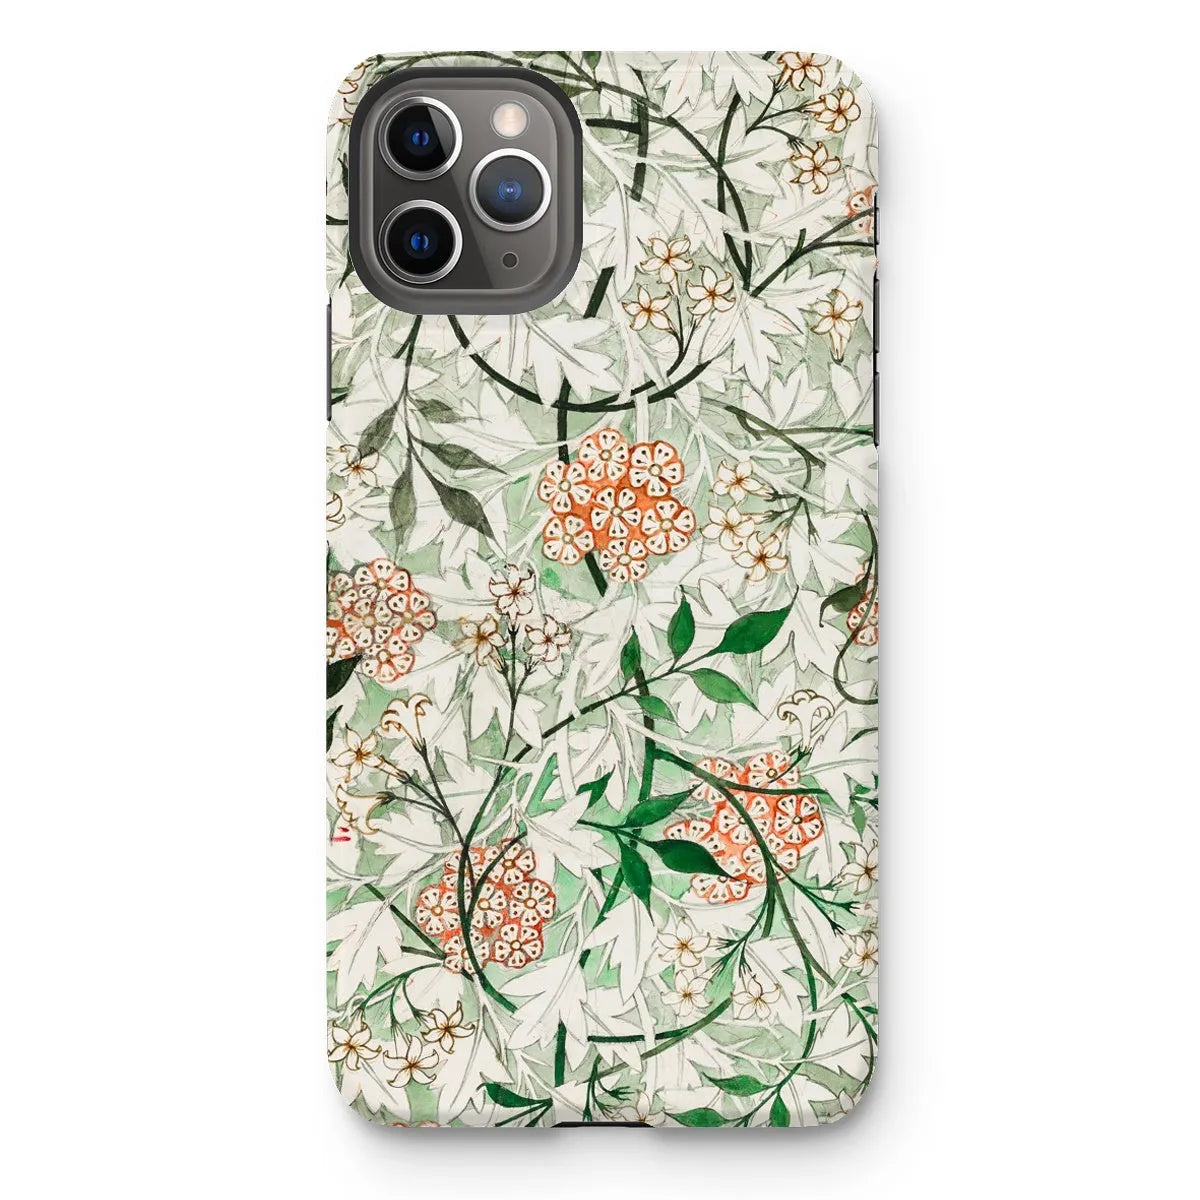 Jasmine Floral Aesthetic Art Phone Case - William Morris - Iphone 11 Pro Max / Matte - Mobile Phone Cases - Aesthetic